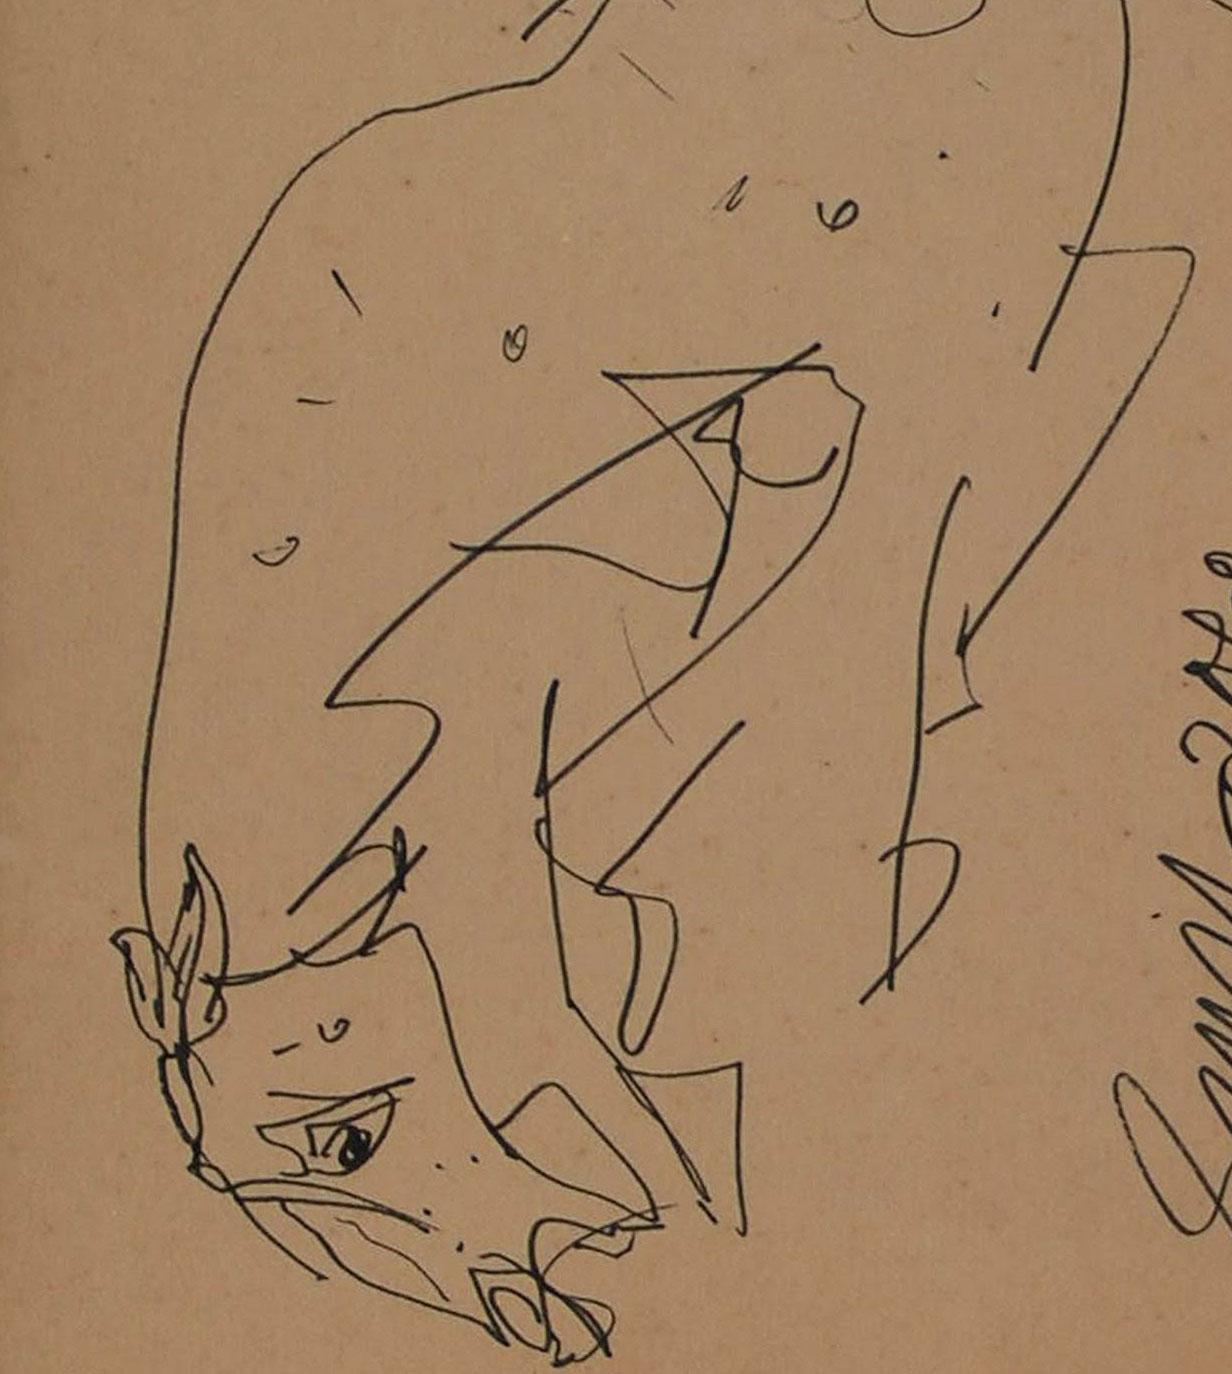 Sunil Das - Sans titre - 9 x 7 pouces (taille non encadrée)
Plume et encre sur papier
Expédition comprise, sous forme prête à être accrochée.

Les dessins d'un vieux cheval sont un retour nostalgique de Sunil aux premiers instants de sa jeunesse.